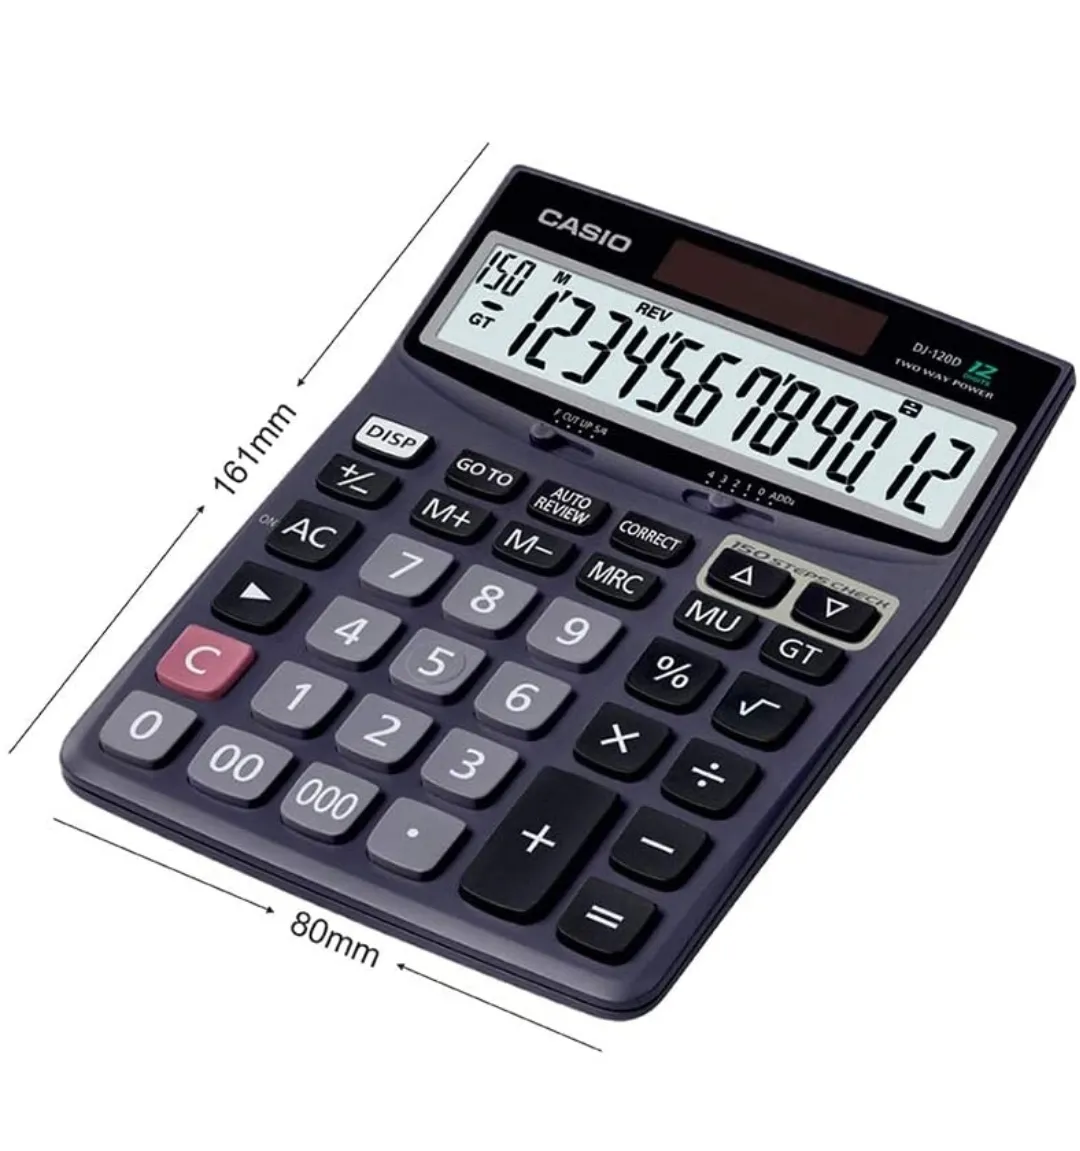 Casio DJ-120D Desktop Calculator